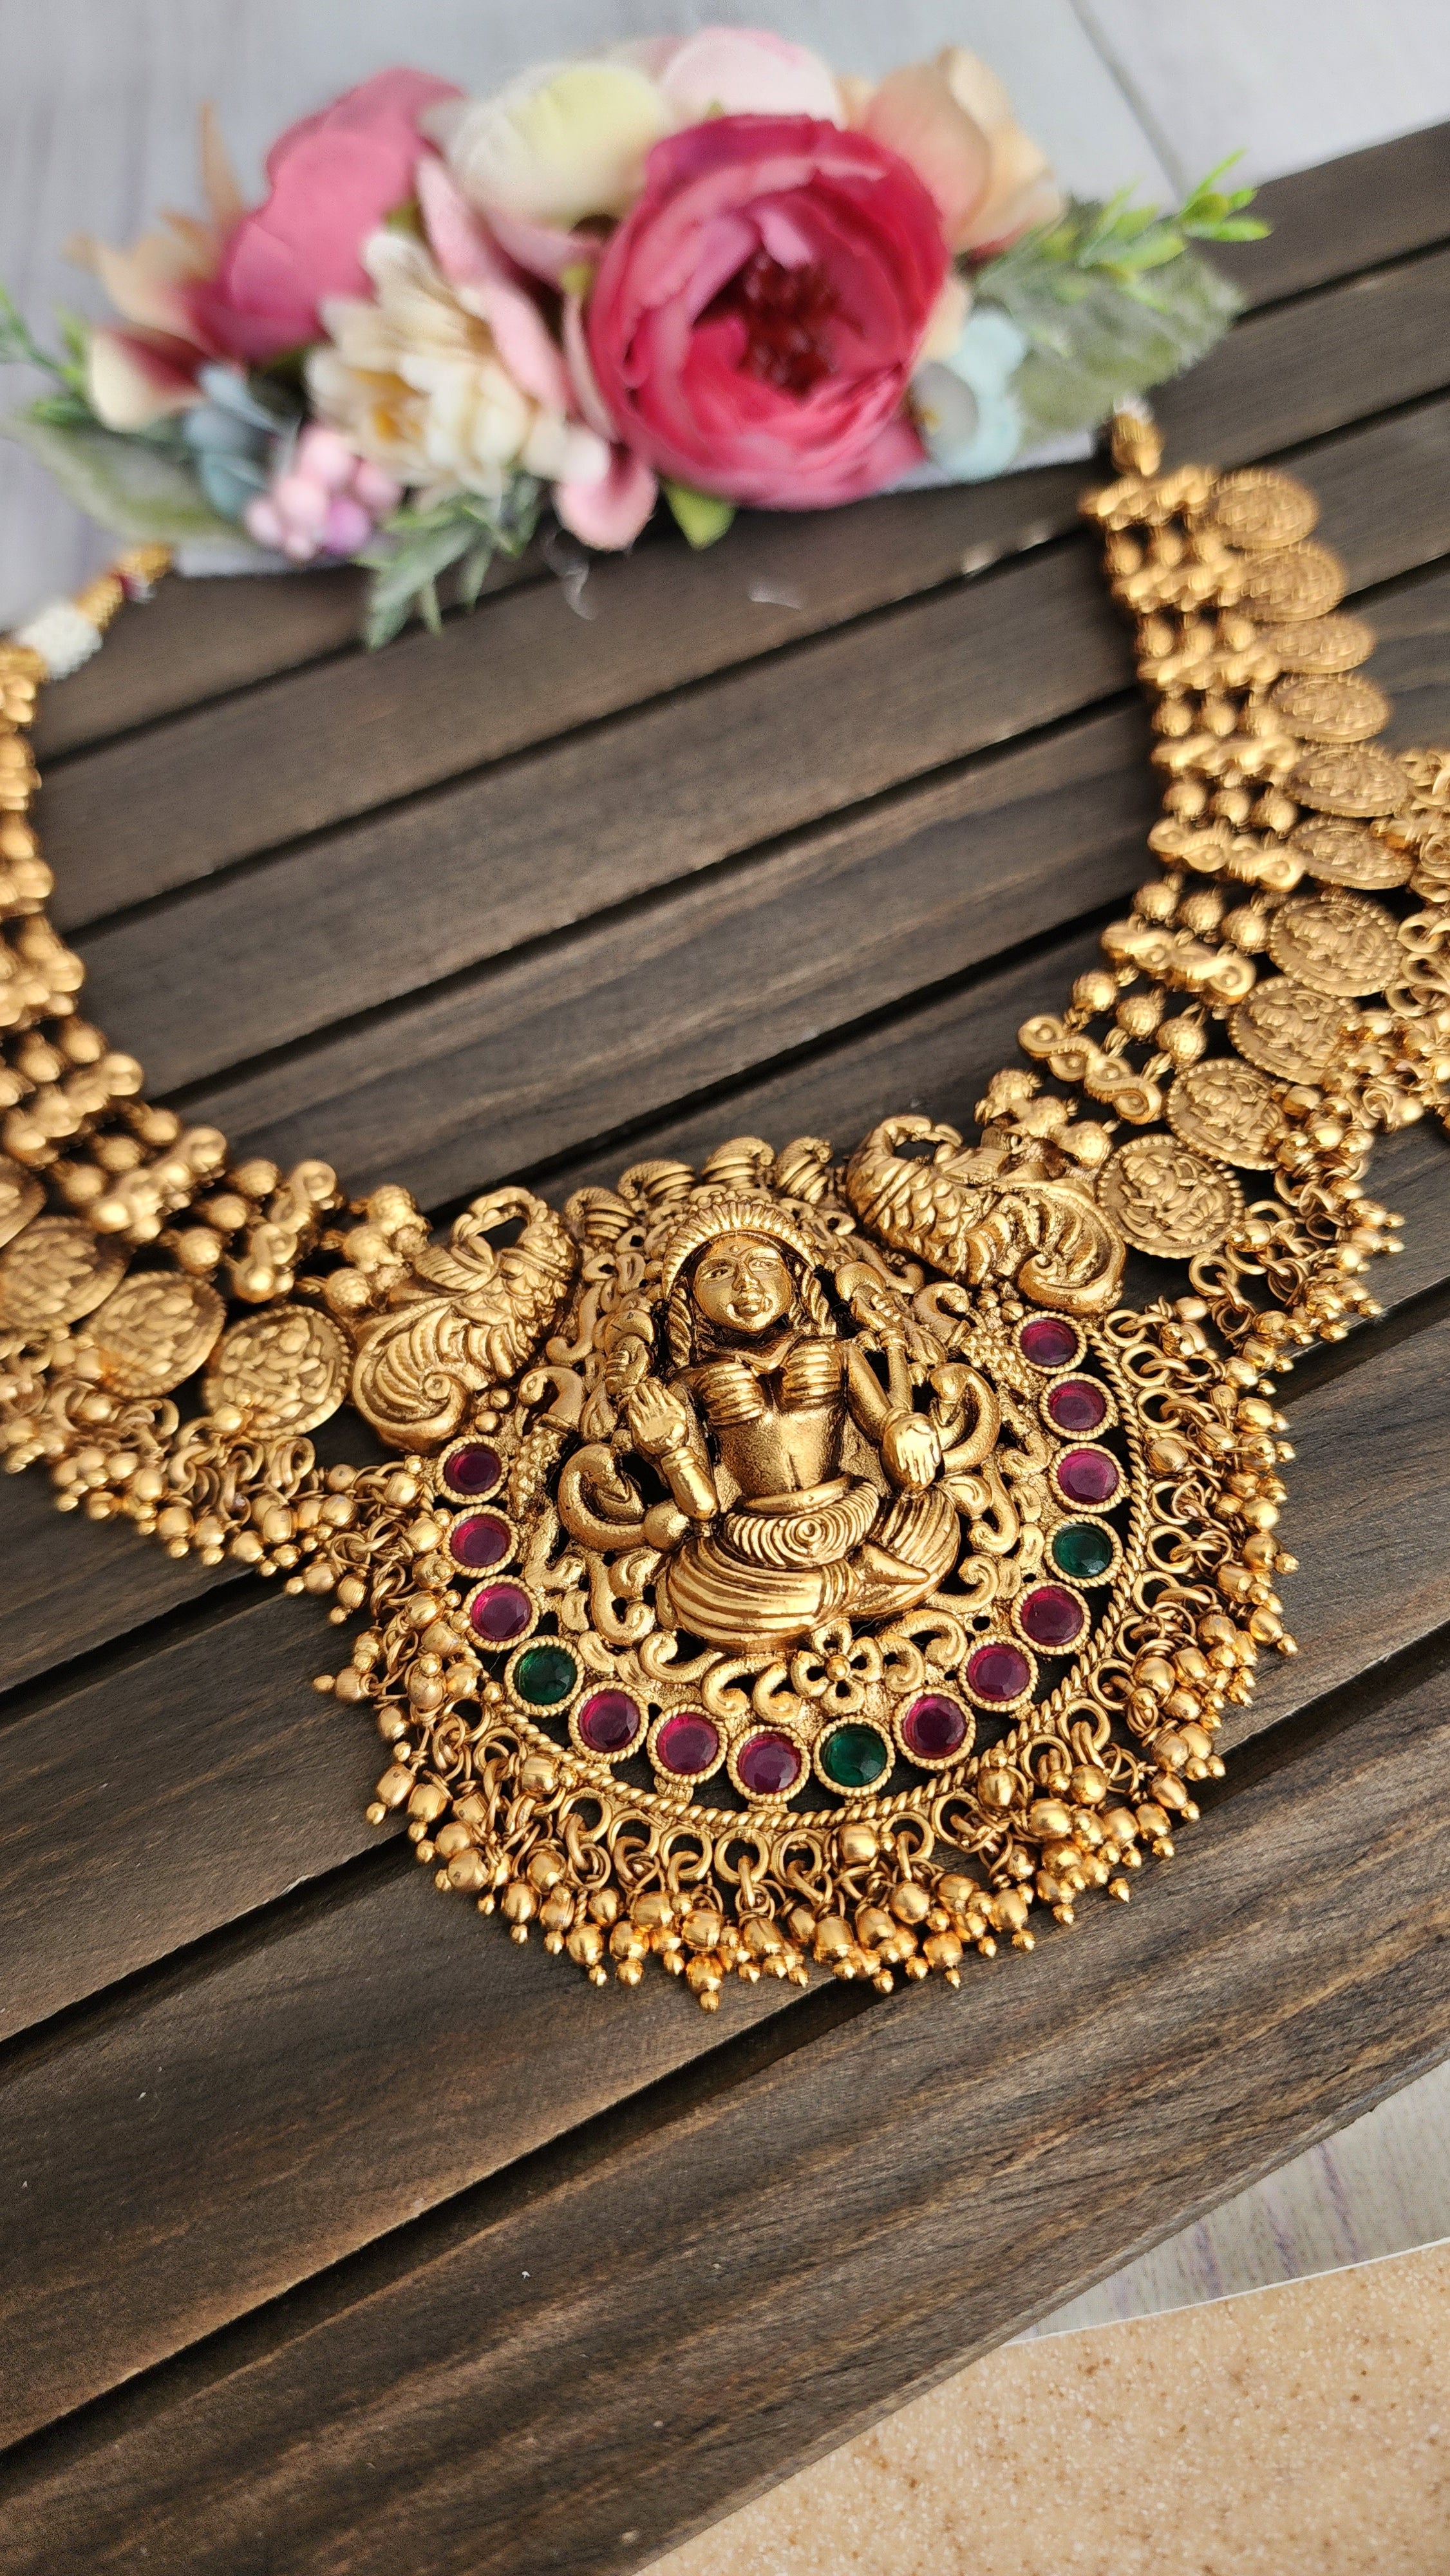 Vasvi designer gold plated necklace set